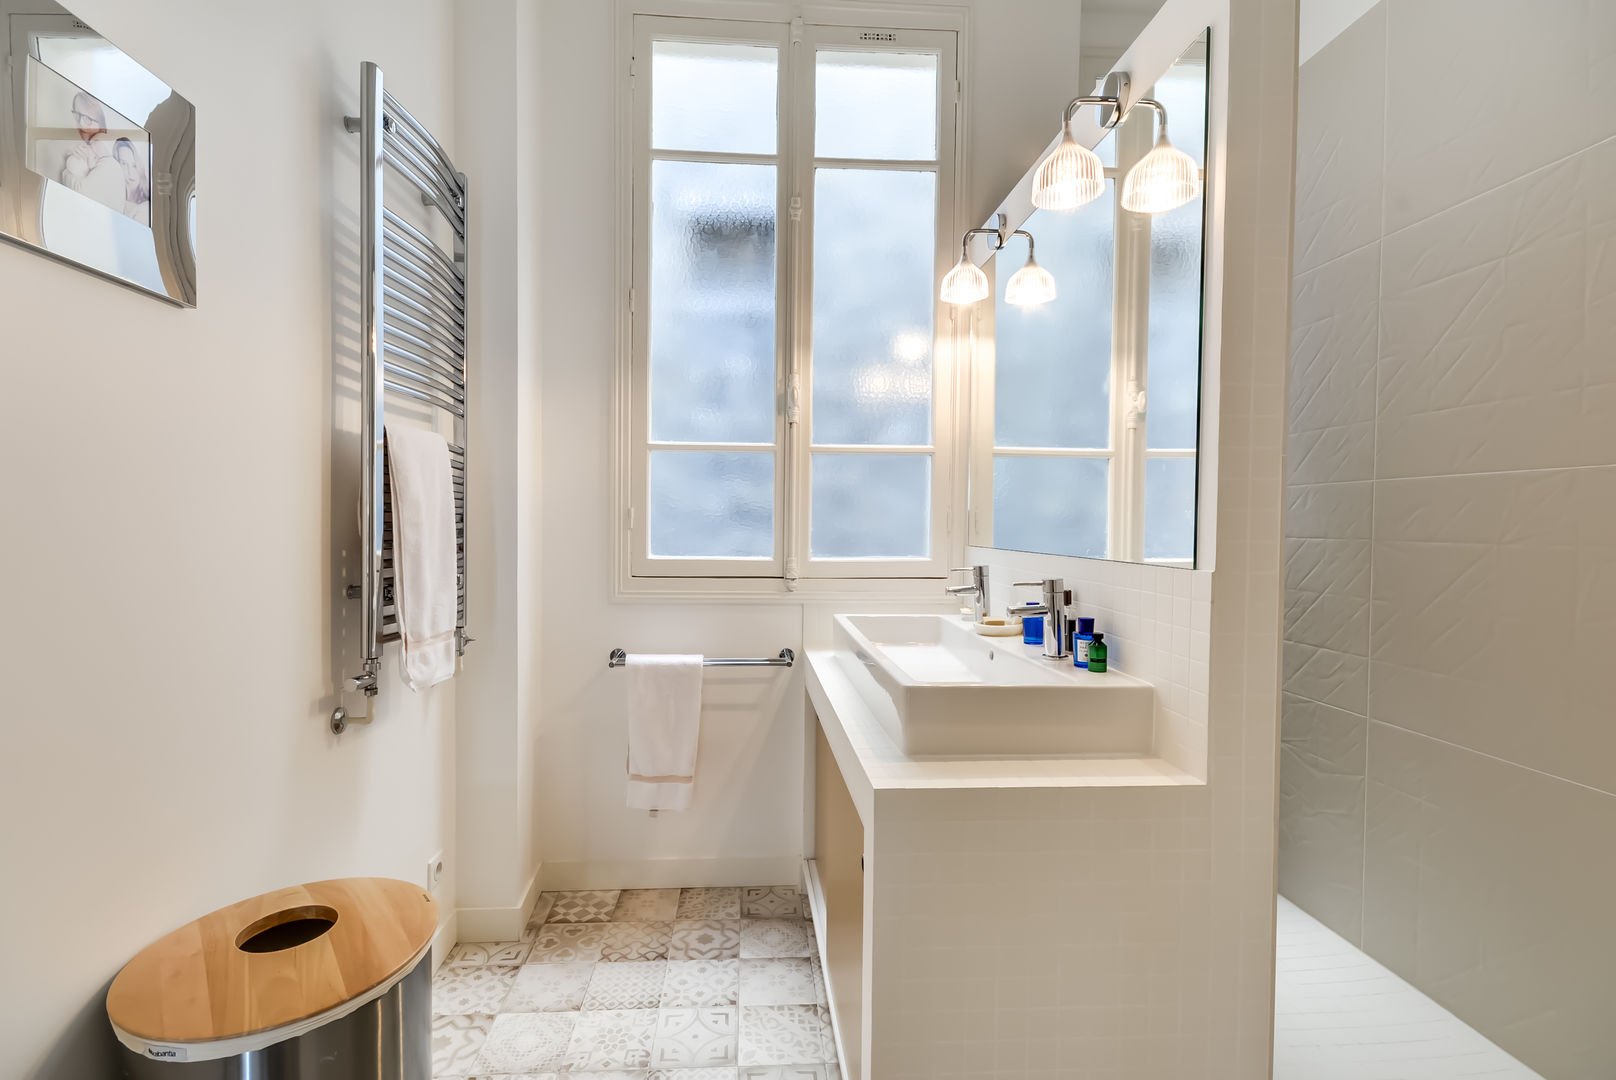 Un appartement haussmanien revisité - Paris 16e, ATELIER FB ATELIER FB Modern bathroom